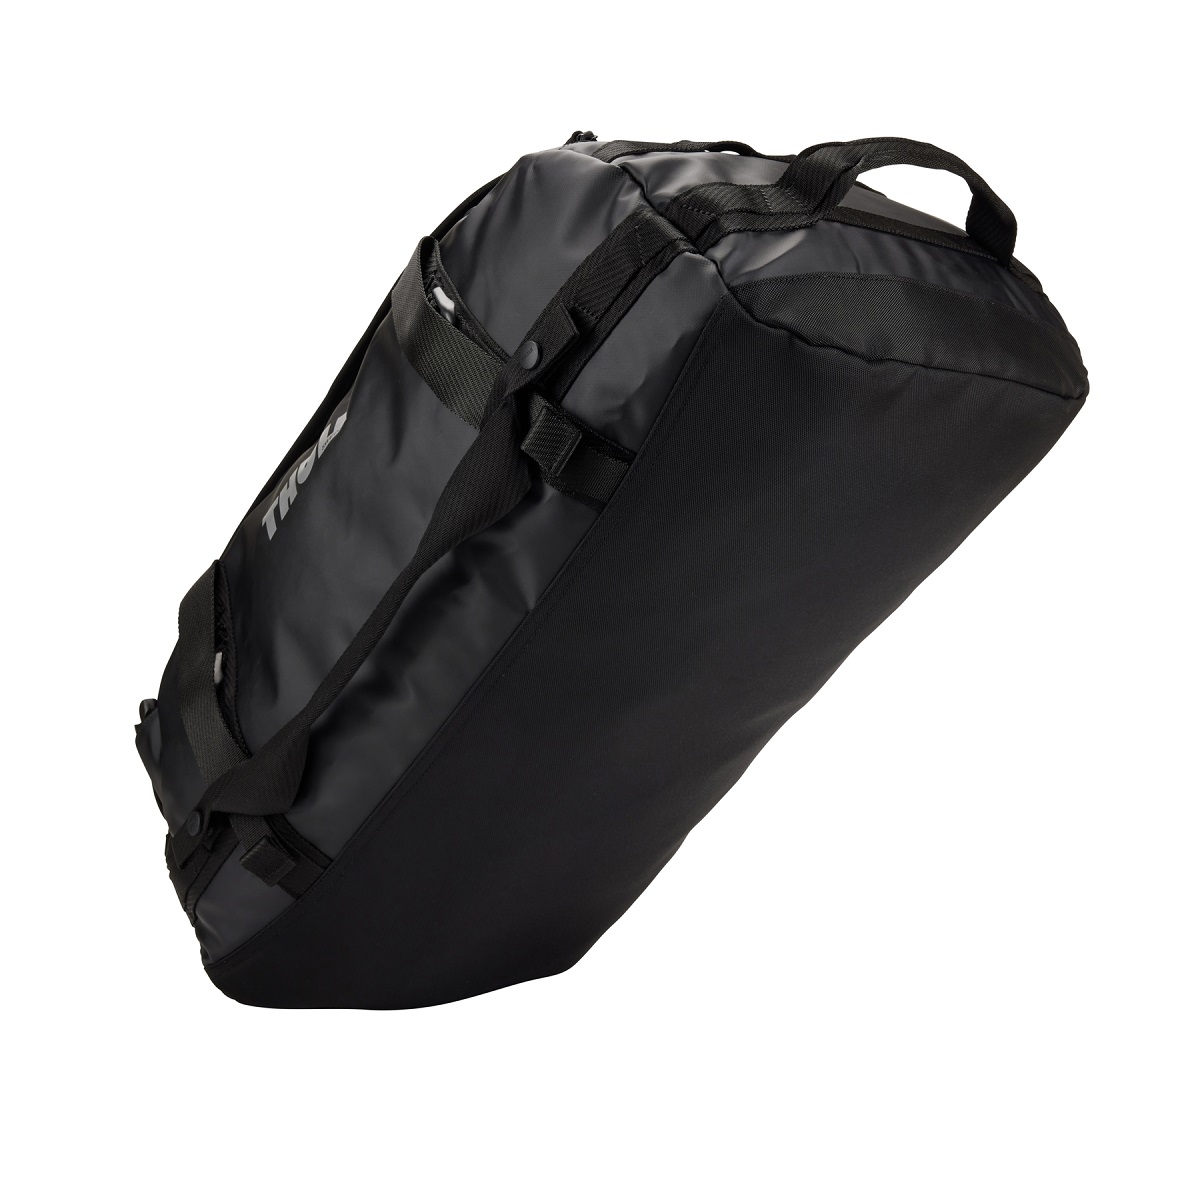 Sportska/putna torba i ruksak 2u1 Thule Chasm 40 L - crna